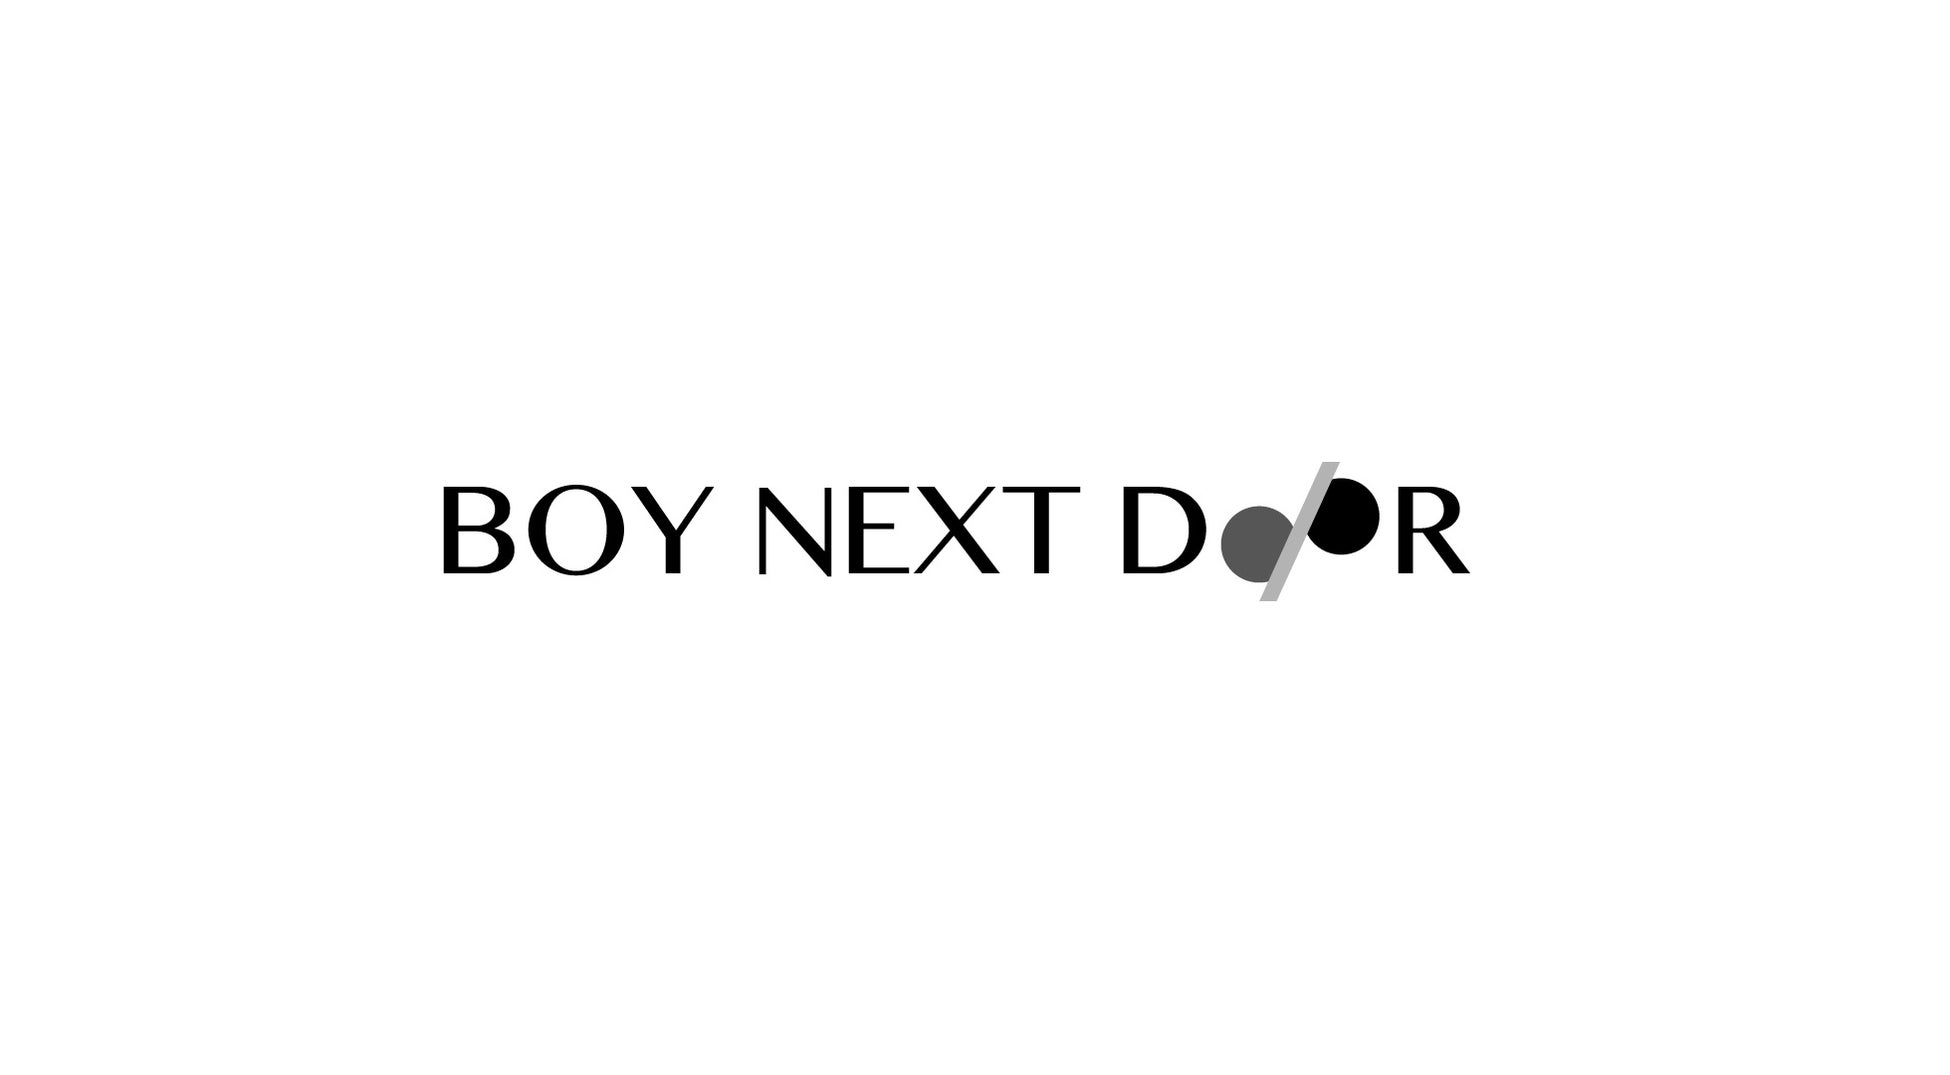 株式会社Coupeが「株式会社BOY NEXT DOOR」へ社名変更。新経営体制にて総額1億円を資金調達、エンタメスタートアップとして第2創業フェーズへ